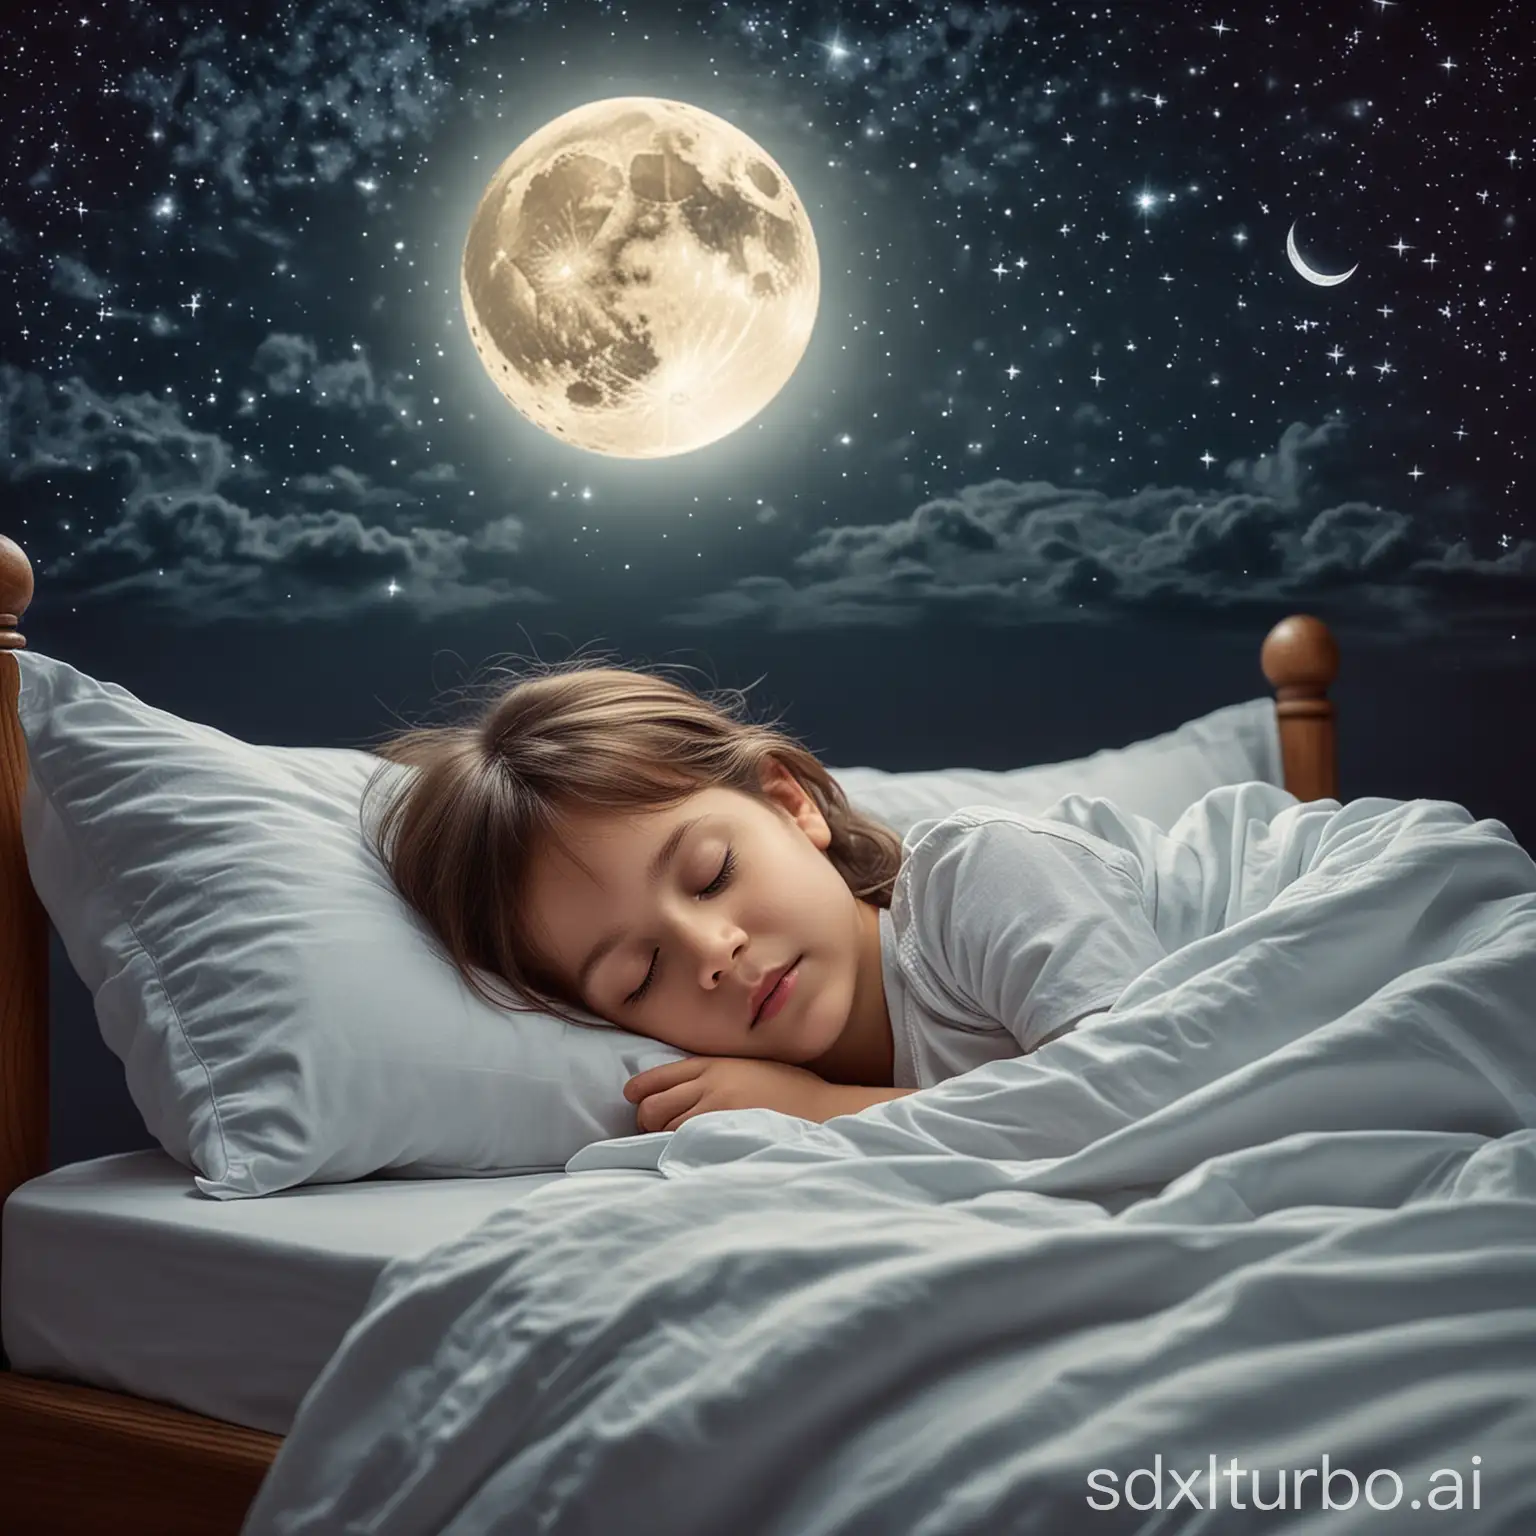 ein Kind im Bett schlafend, träumt von Ferien, draussen ist es Nacht, man sieht den Mond